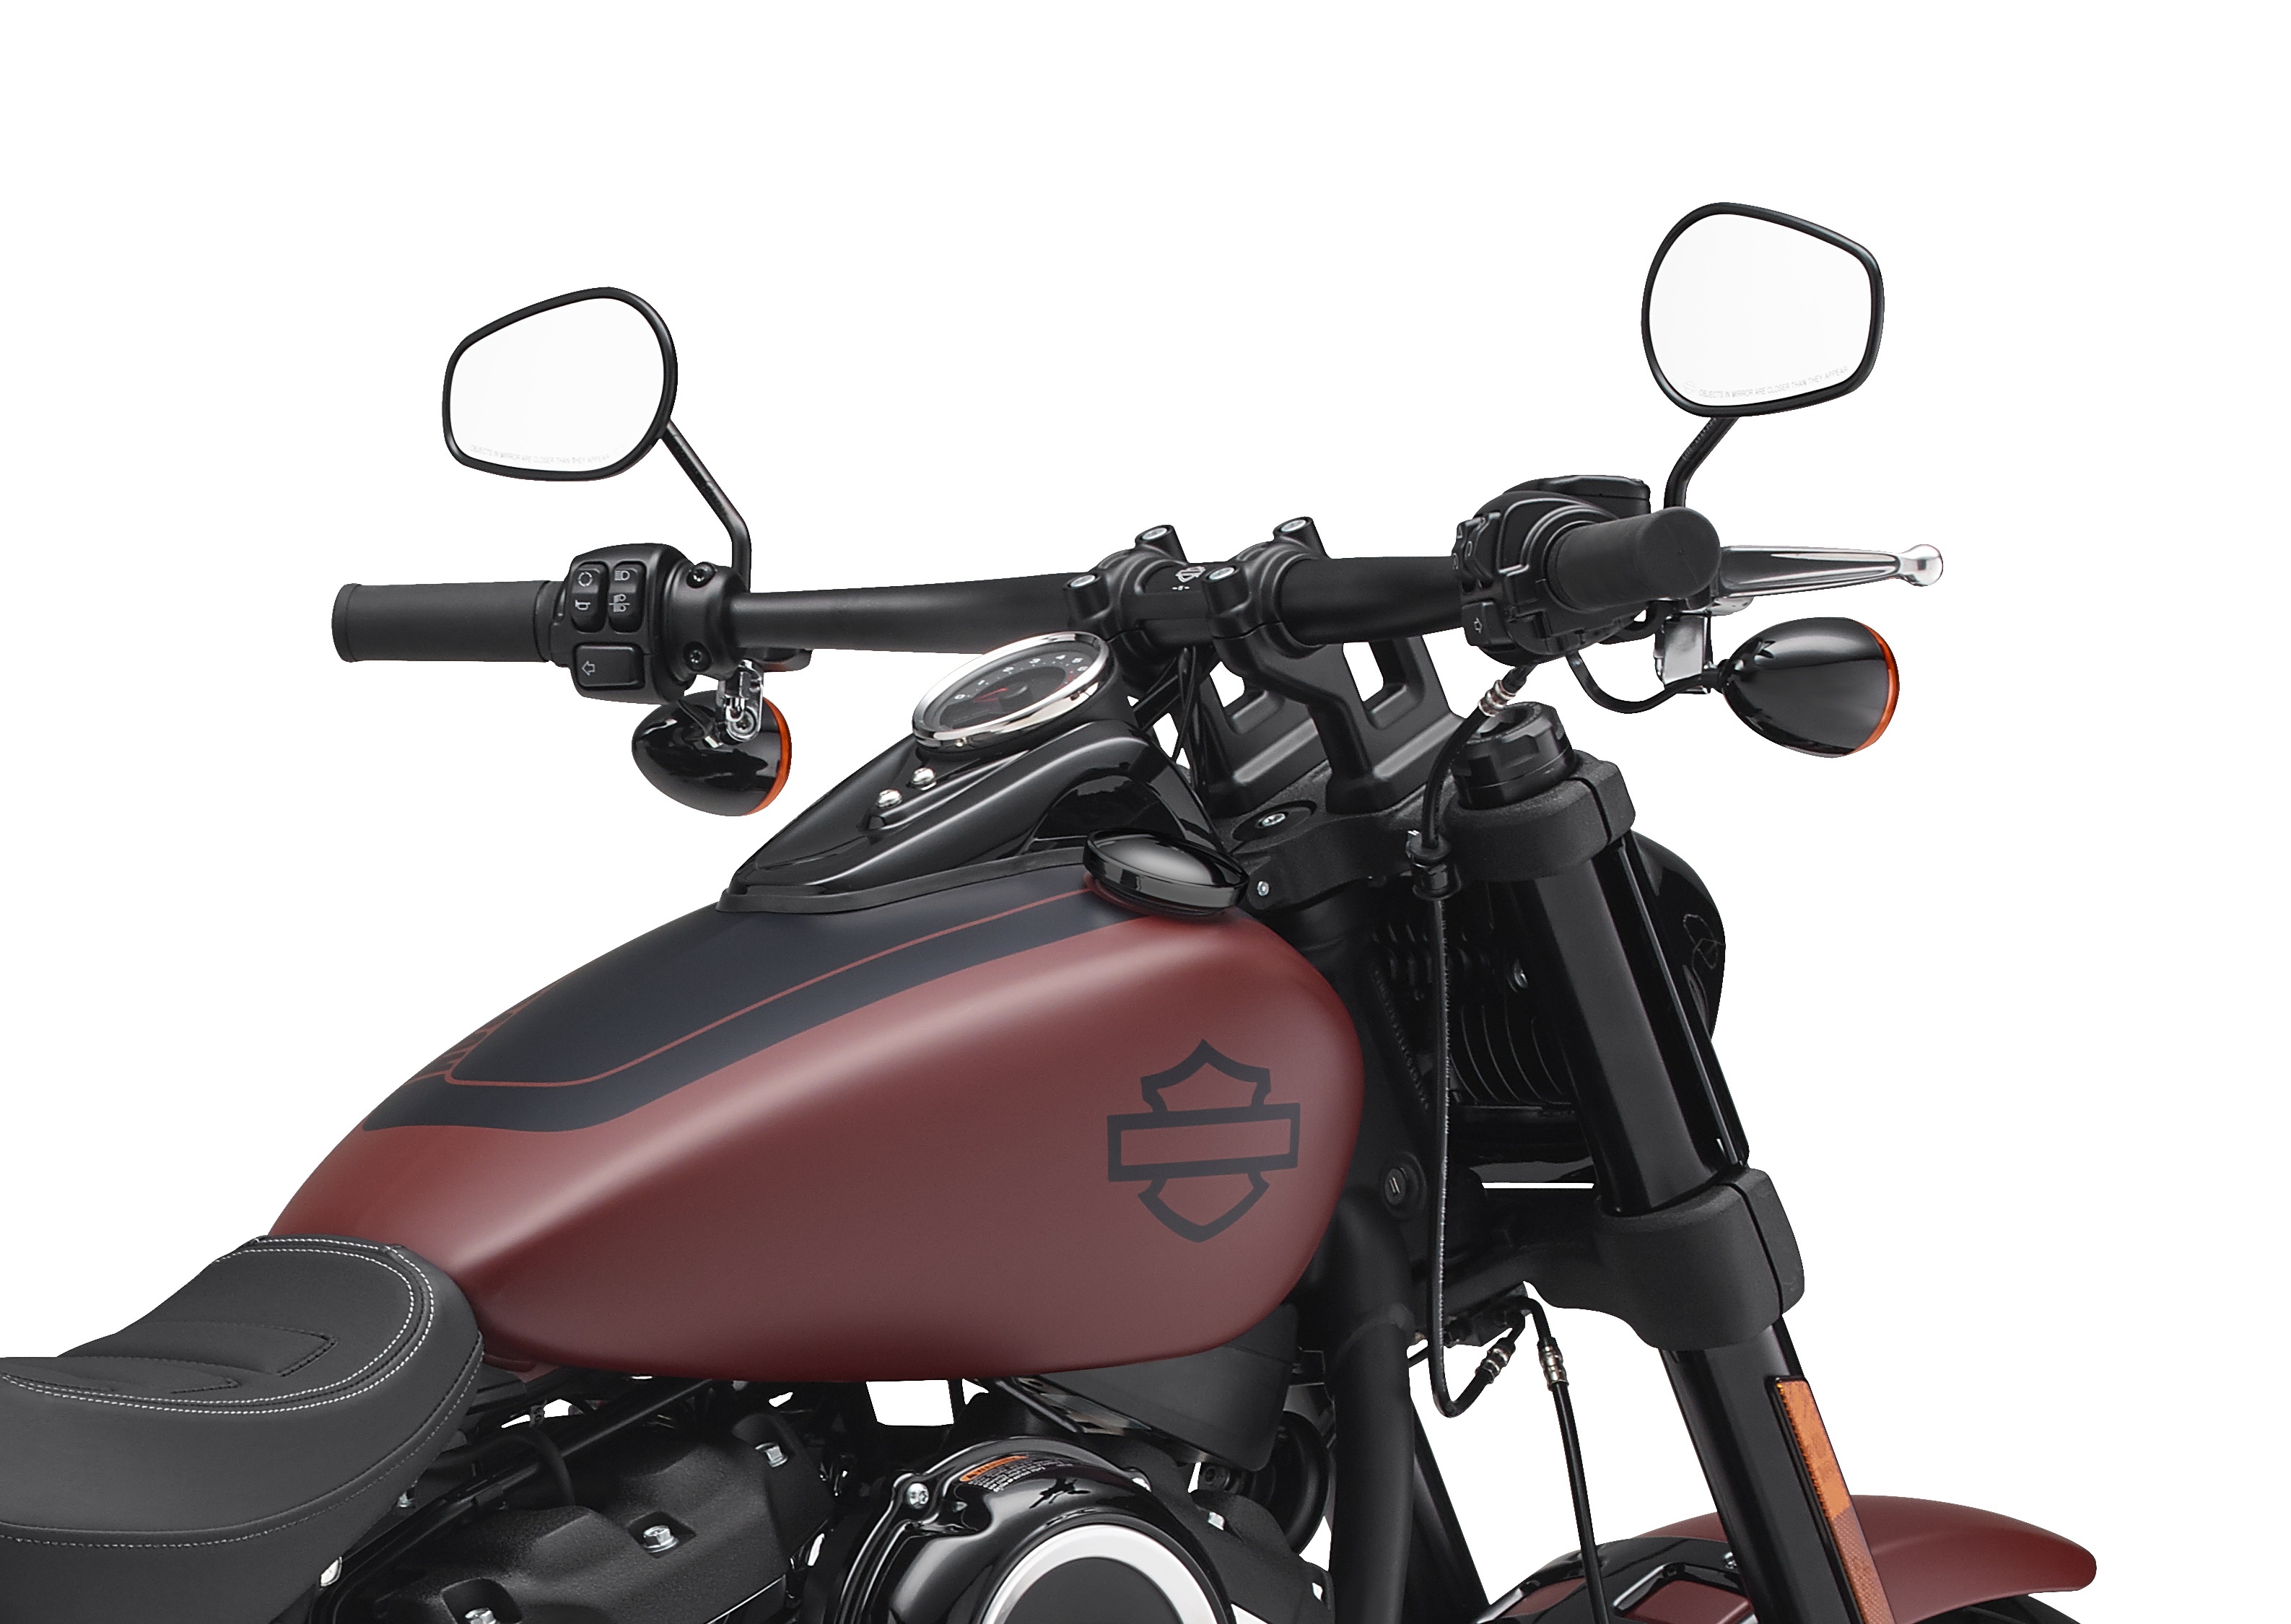 Ersatzteile für Harley Davidson Motorräder , Dynojet Tuning Center